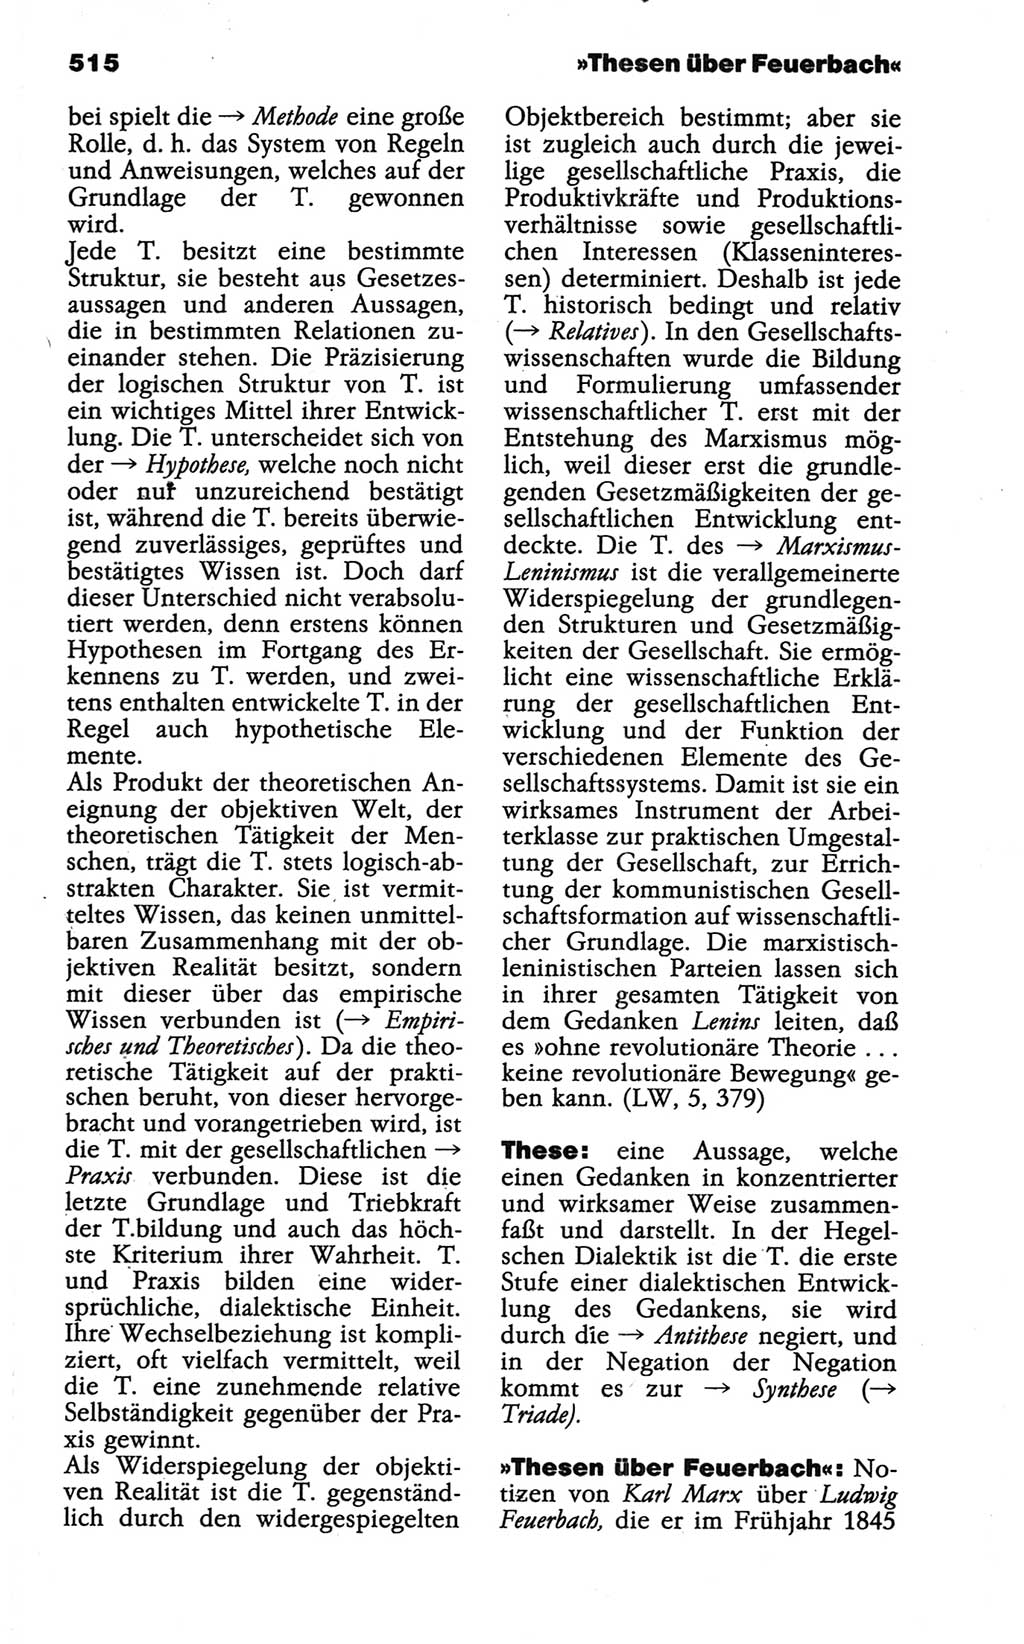 Wörterbuch der marxistisch-leninistischen Philosophie [Deutsche Demokratische Republik (DDR)] 1986, Seite 515 (Wb. ML Phil. DDR 1986, S. 515)